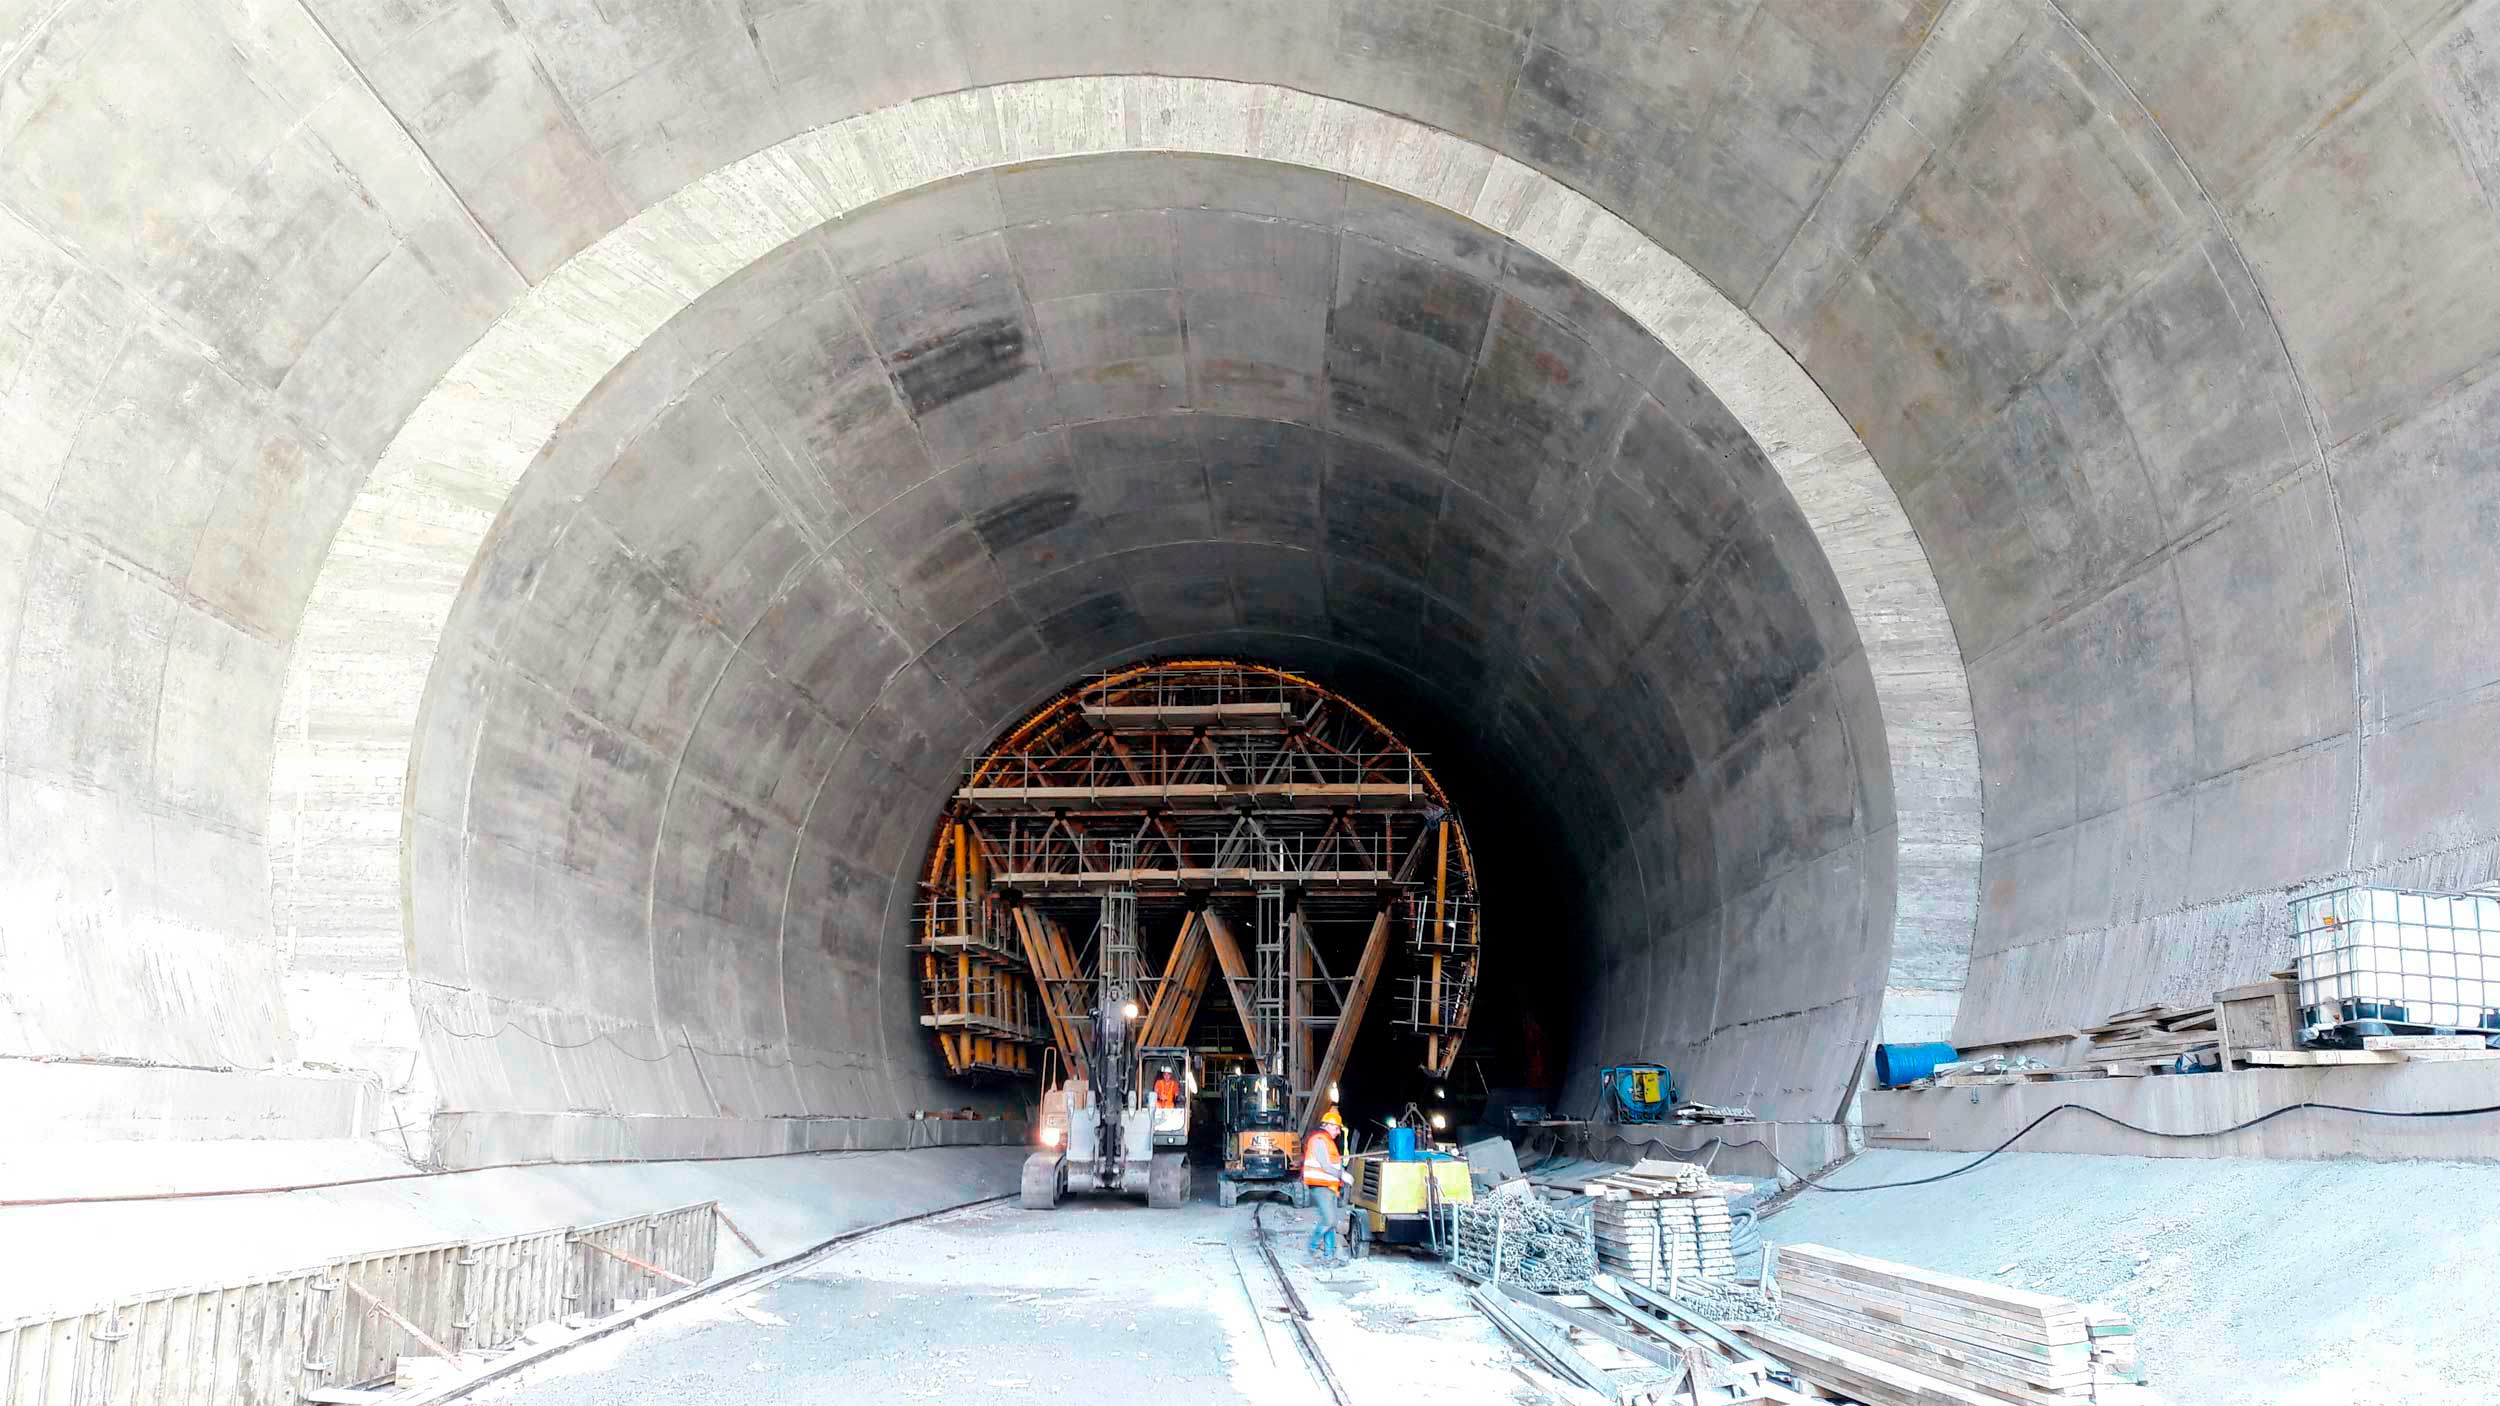 Sistemi di casseforme utilizzati per la costruzione di gallerie, canali, tunnel, ecc... (opere civili).